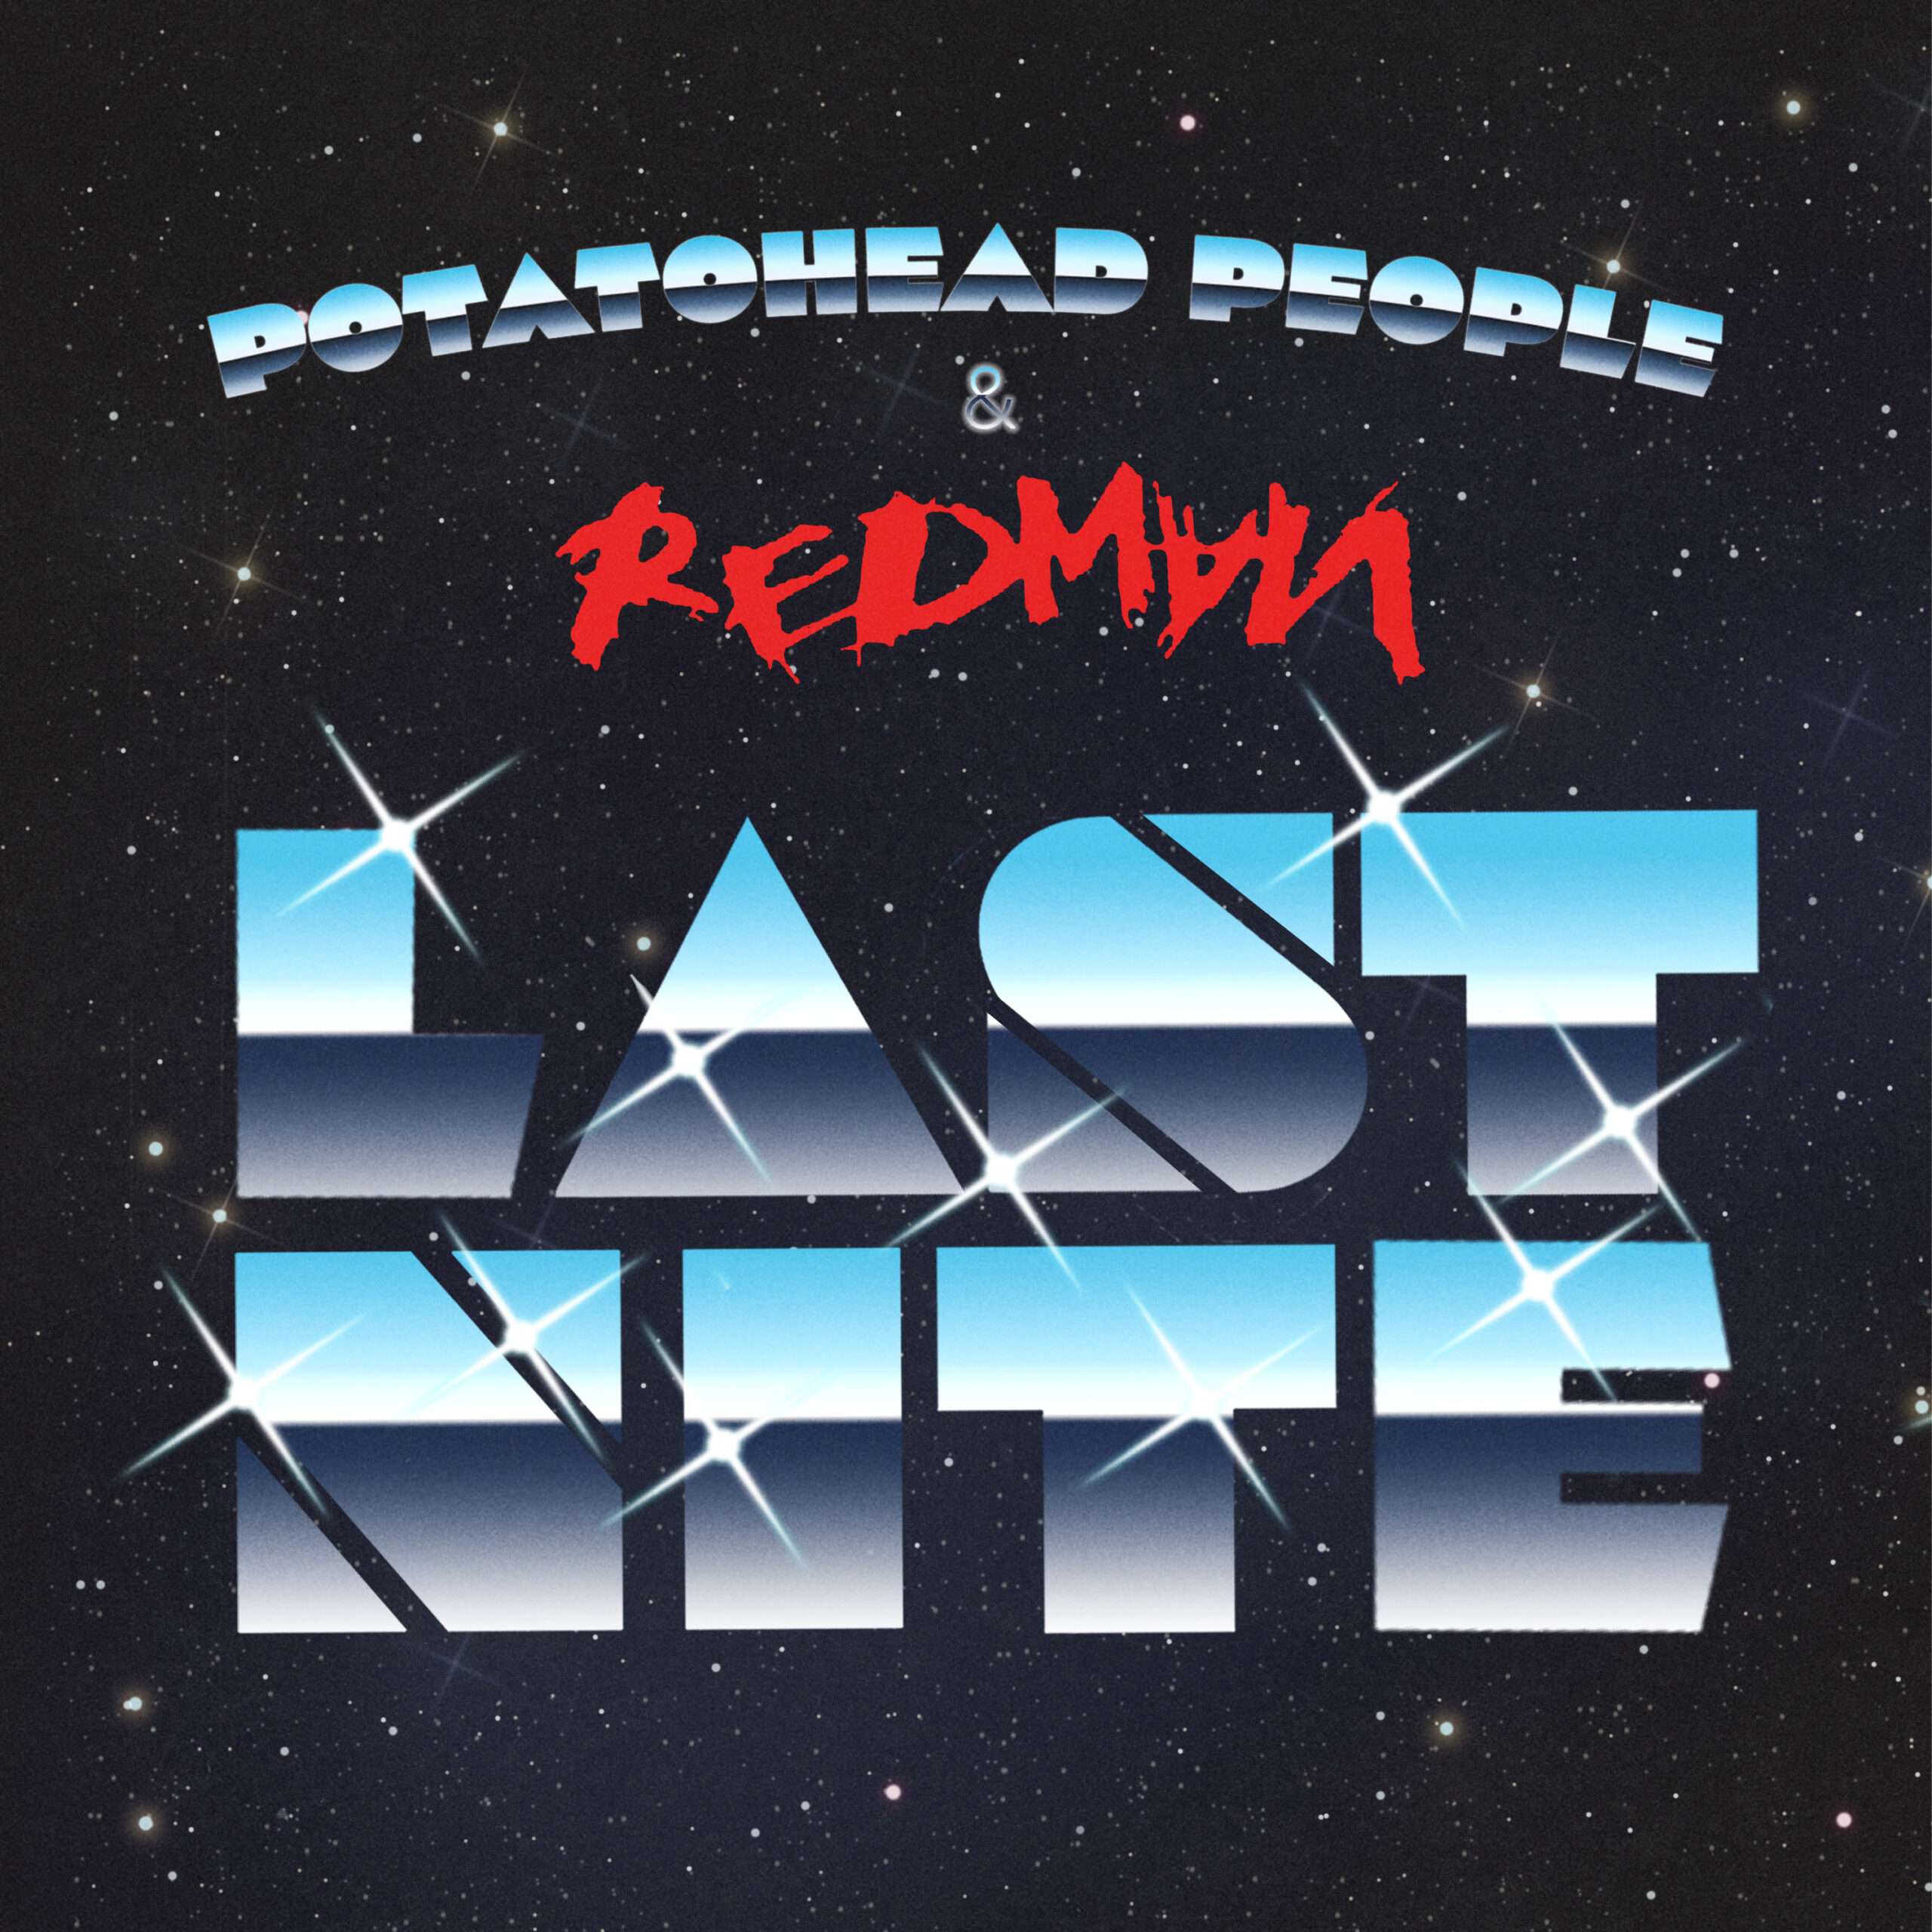 Potatohead People & Redman – Last Nite